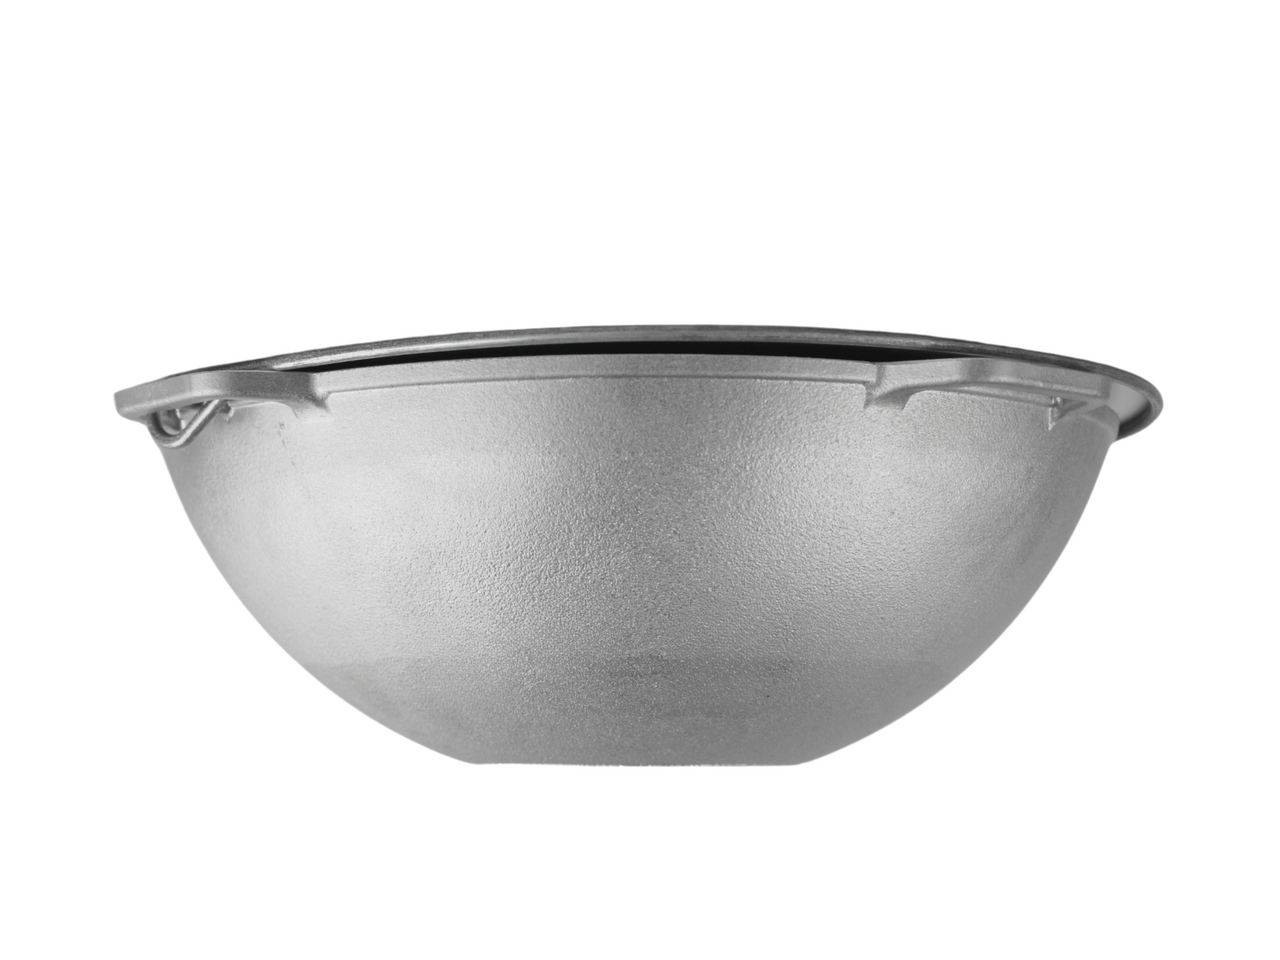 Aluminum фышфт cauldron Brizoll 4 l with bracket, lid and tripod